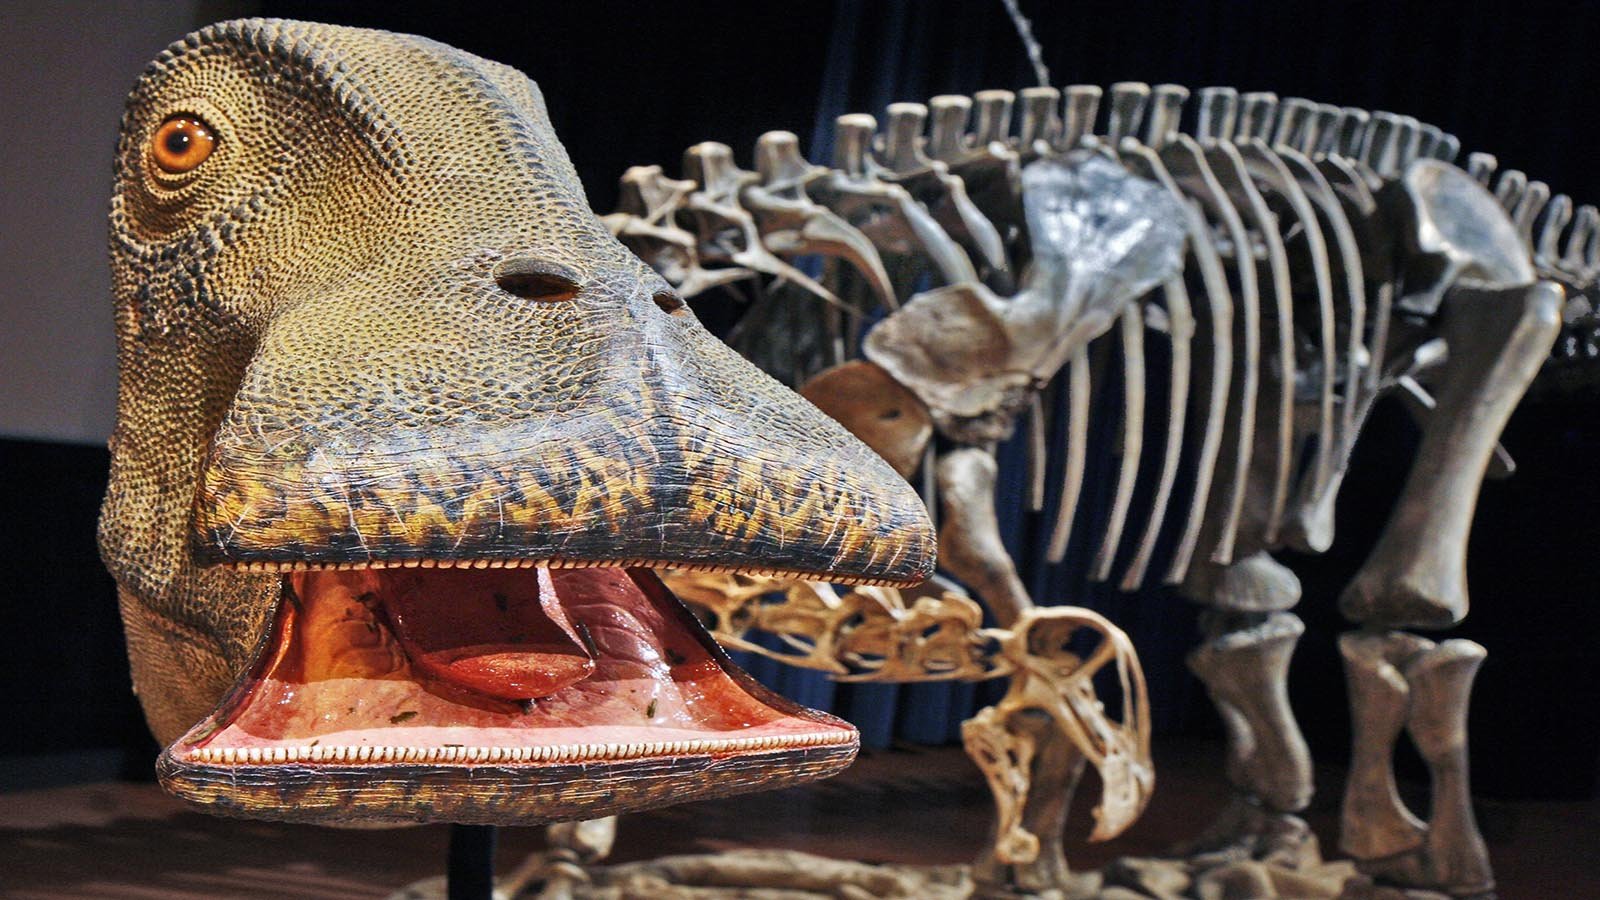 A Dinosaur With 500 Teeth, Who? The World's Oddest Dinosaur With the Most Teeth